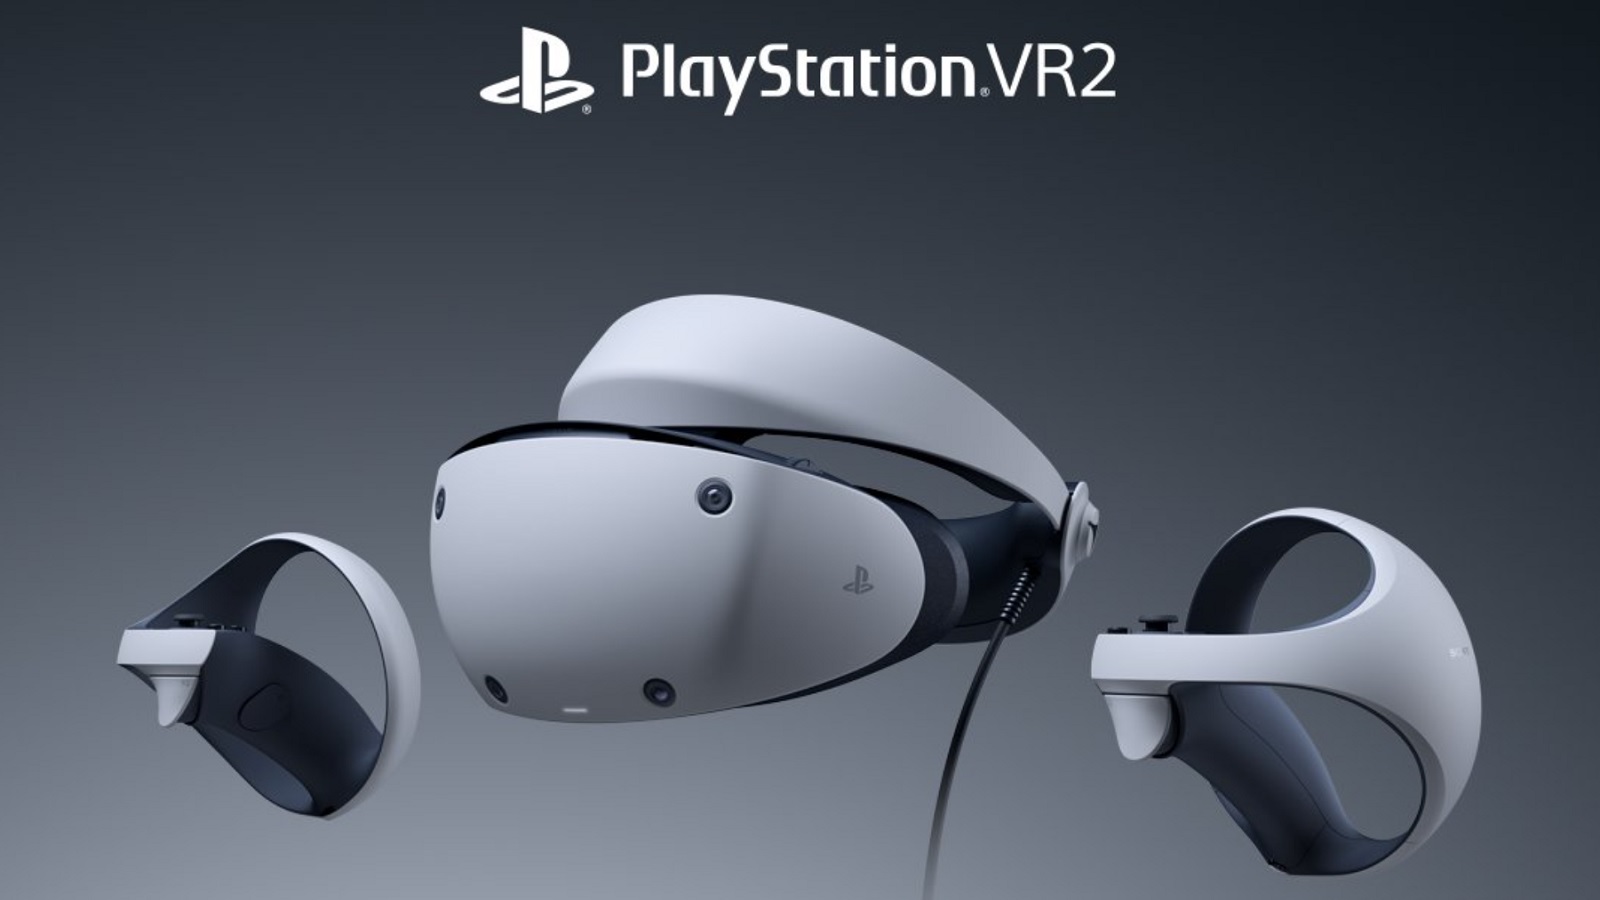 PS VR2 : ce que nous disent les prises en main du nouveau casque